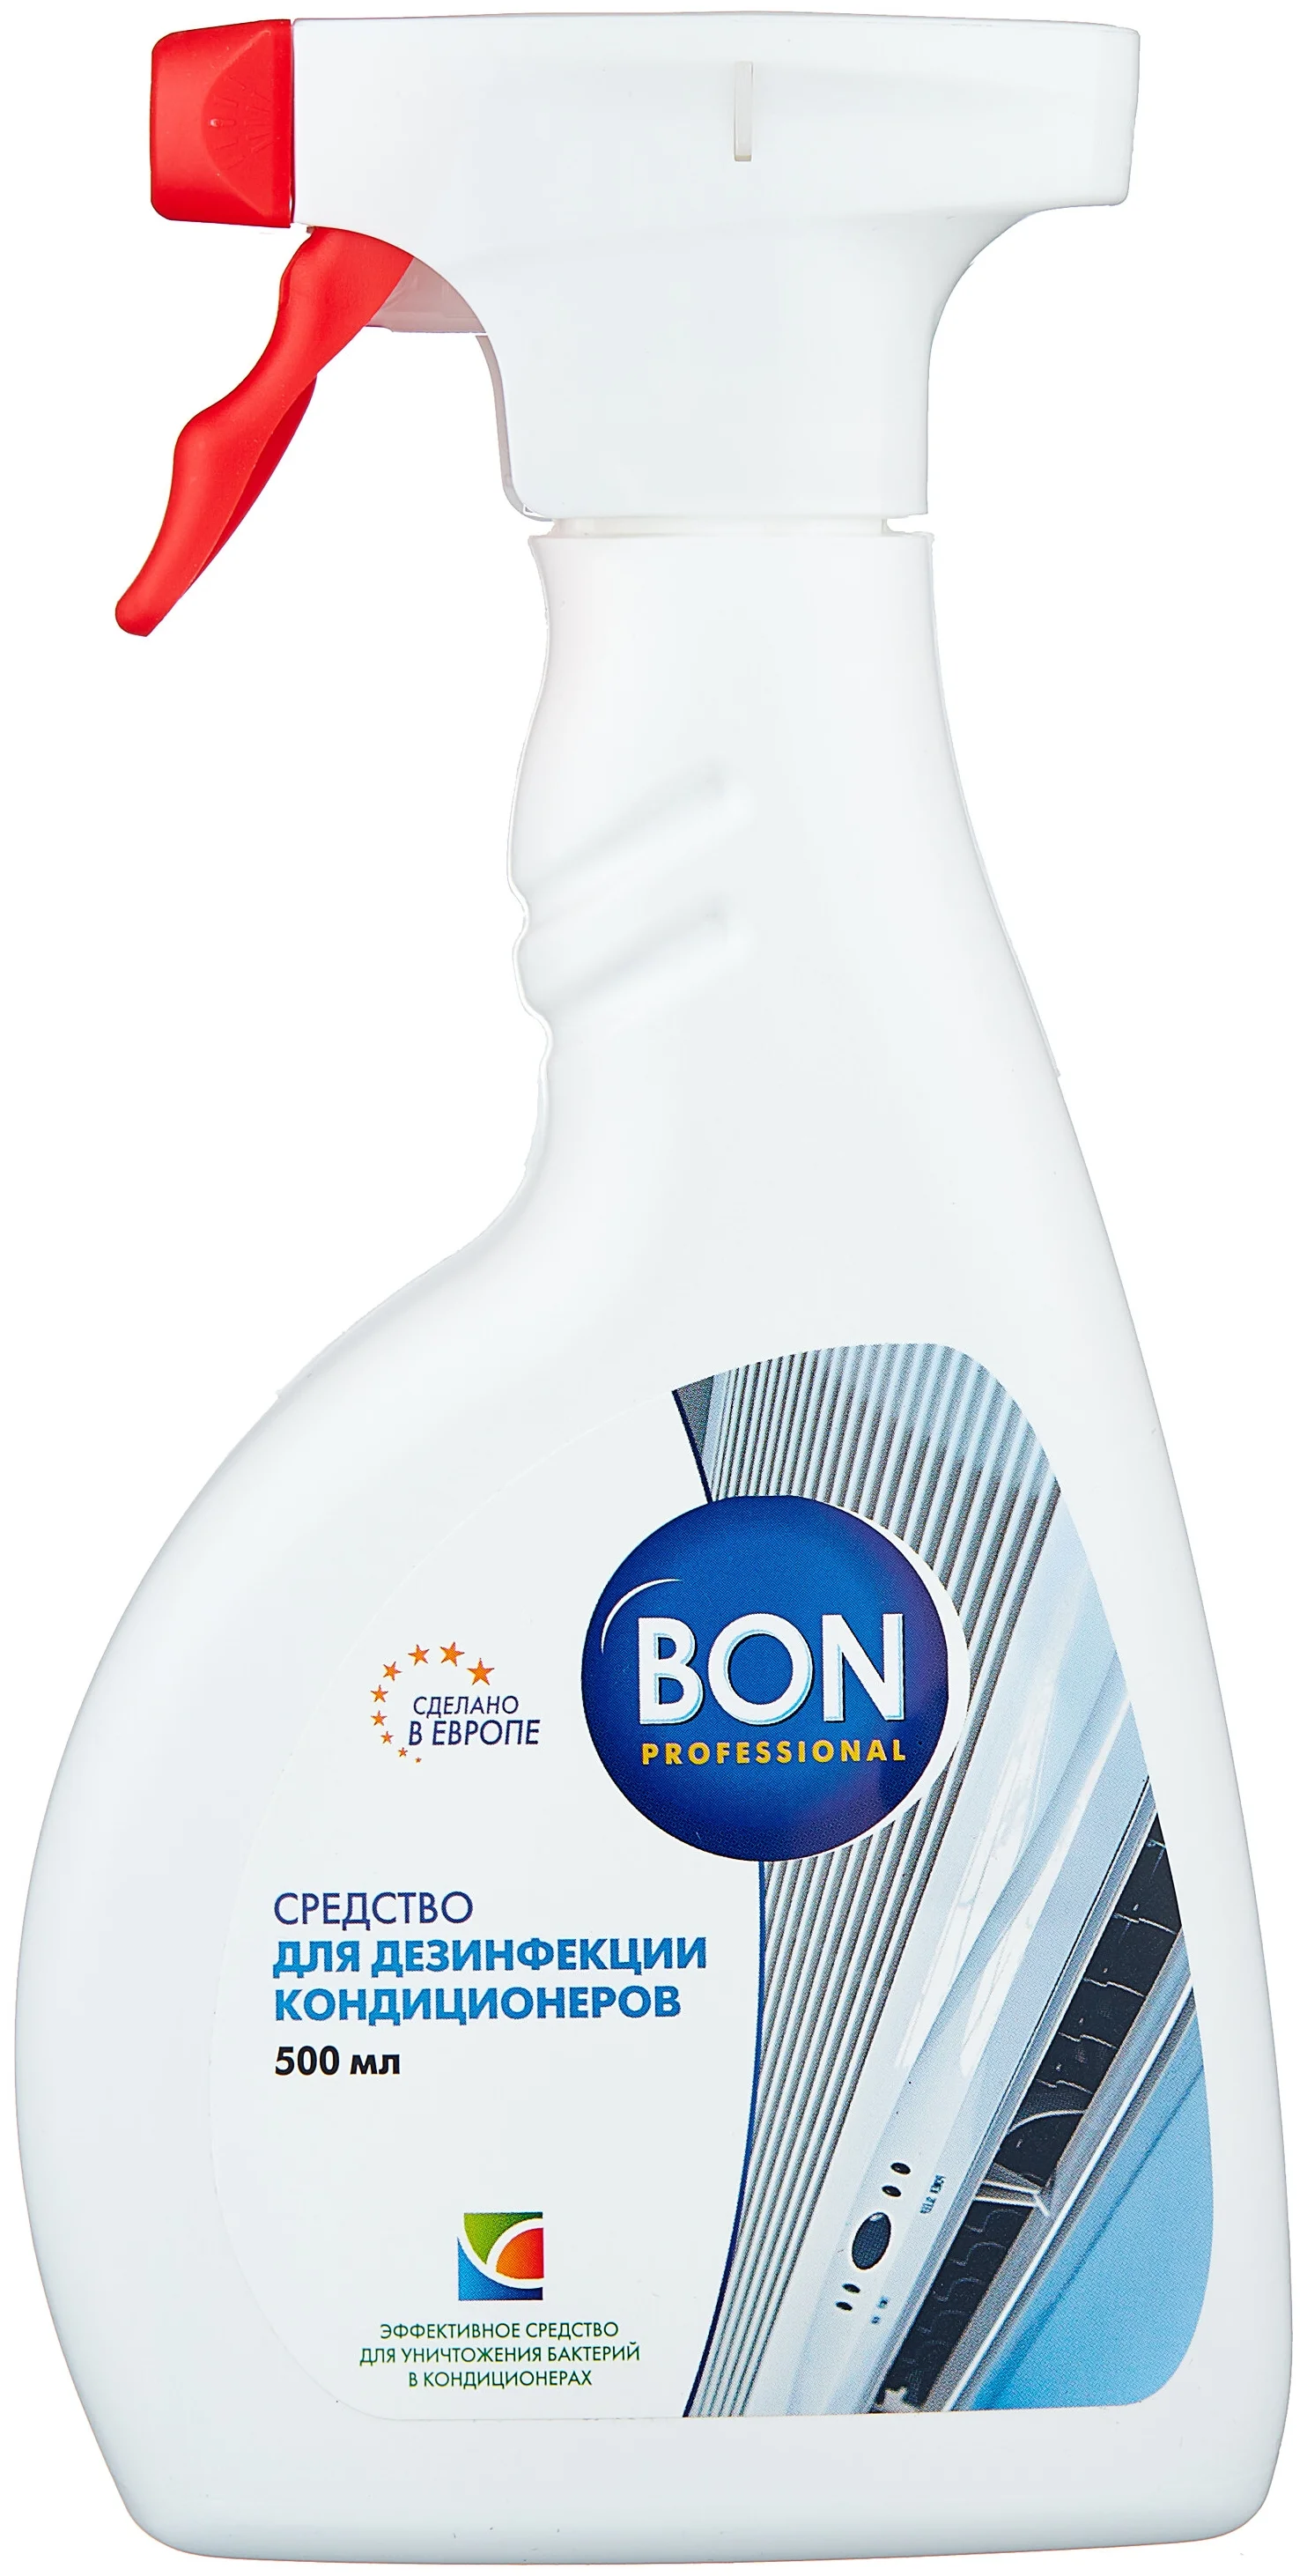 BON BN-153 - эффект: против плесени, антибактериальный, устранение неприятного запаха